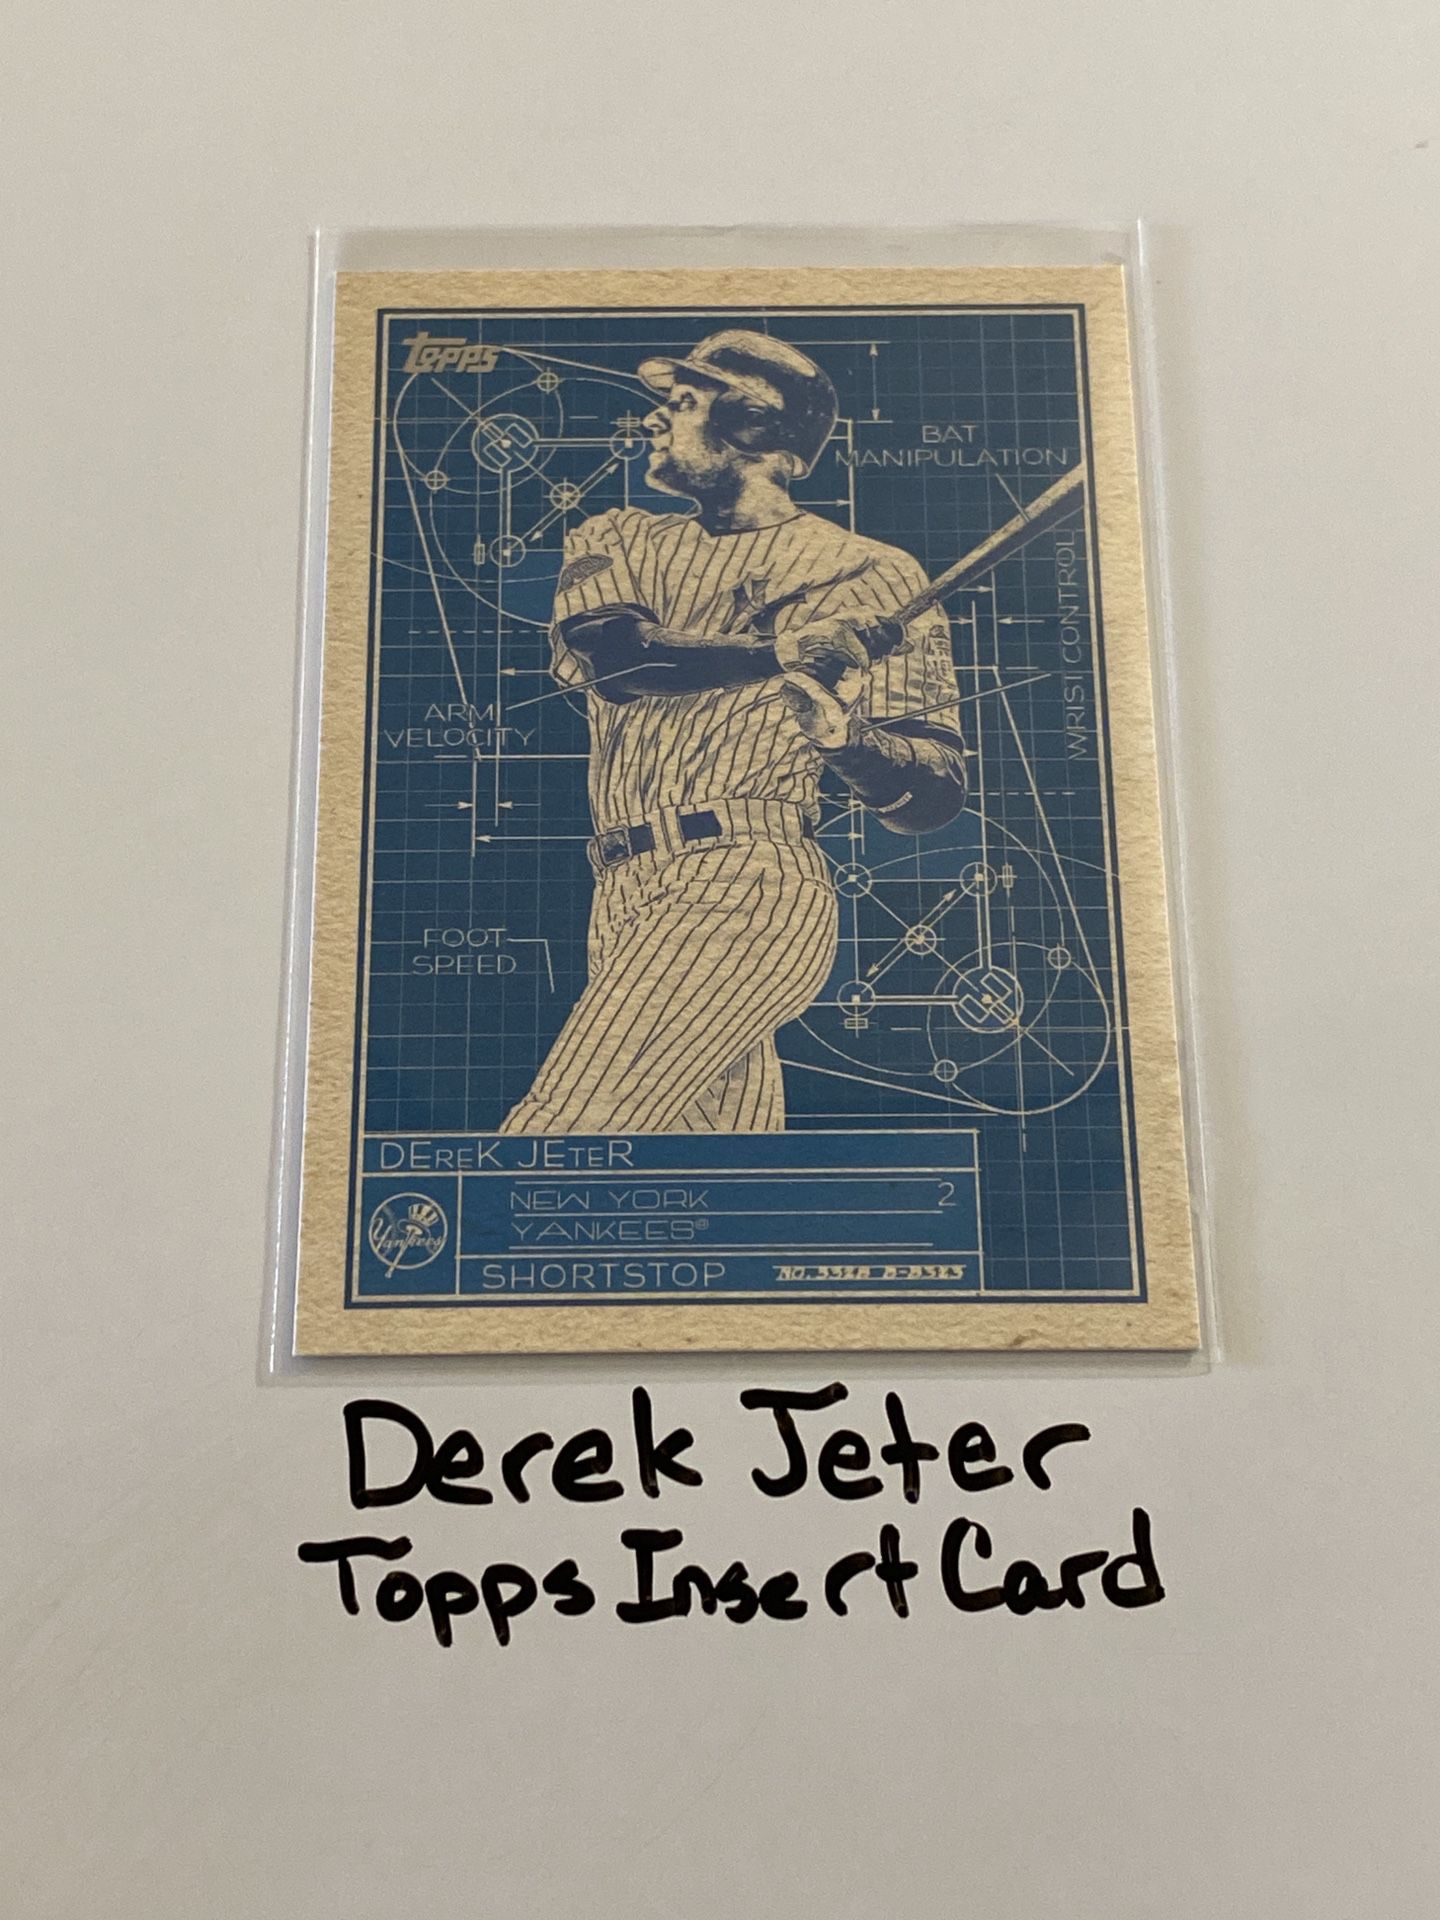 Derek Jeter New York Yankees Hall of Fame Shortstop Topps Short Print Insert Card. 